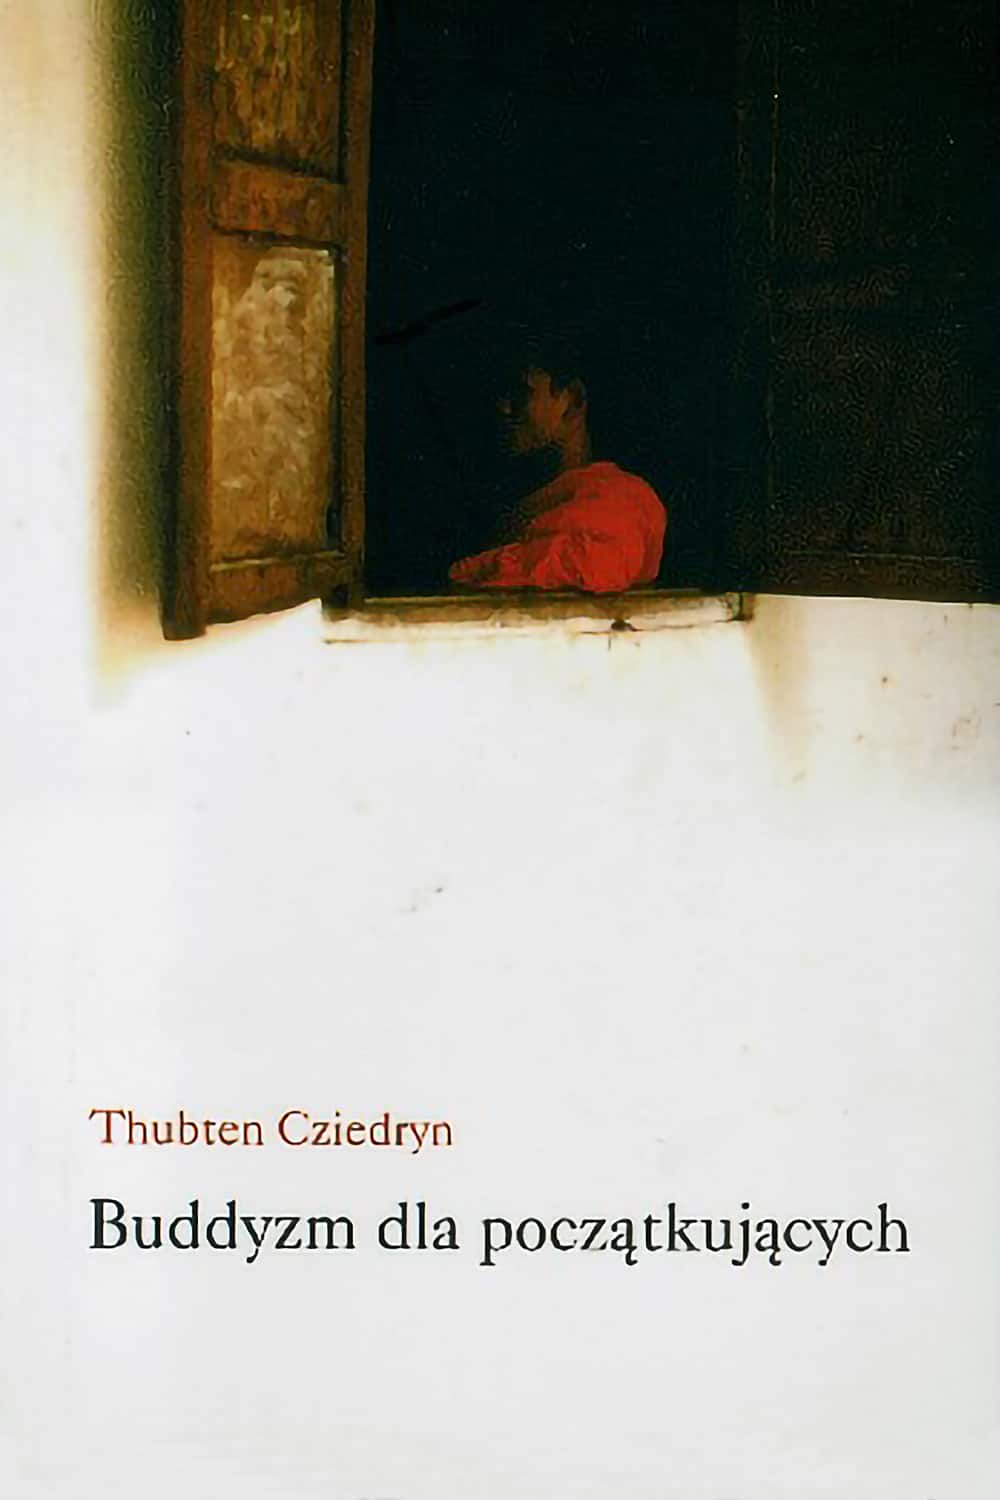 Okładka Buddyzmu dla początkujących w języku polskim